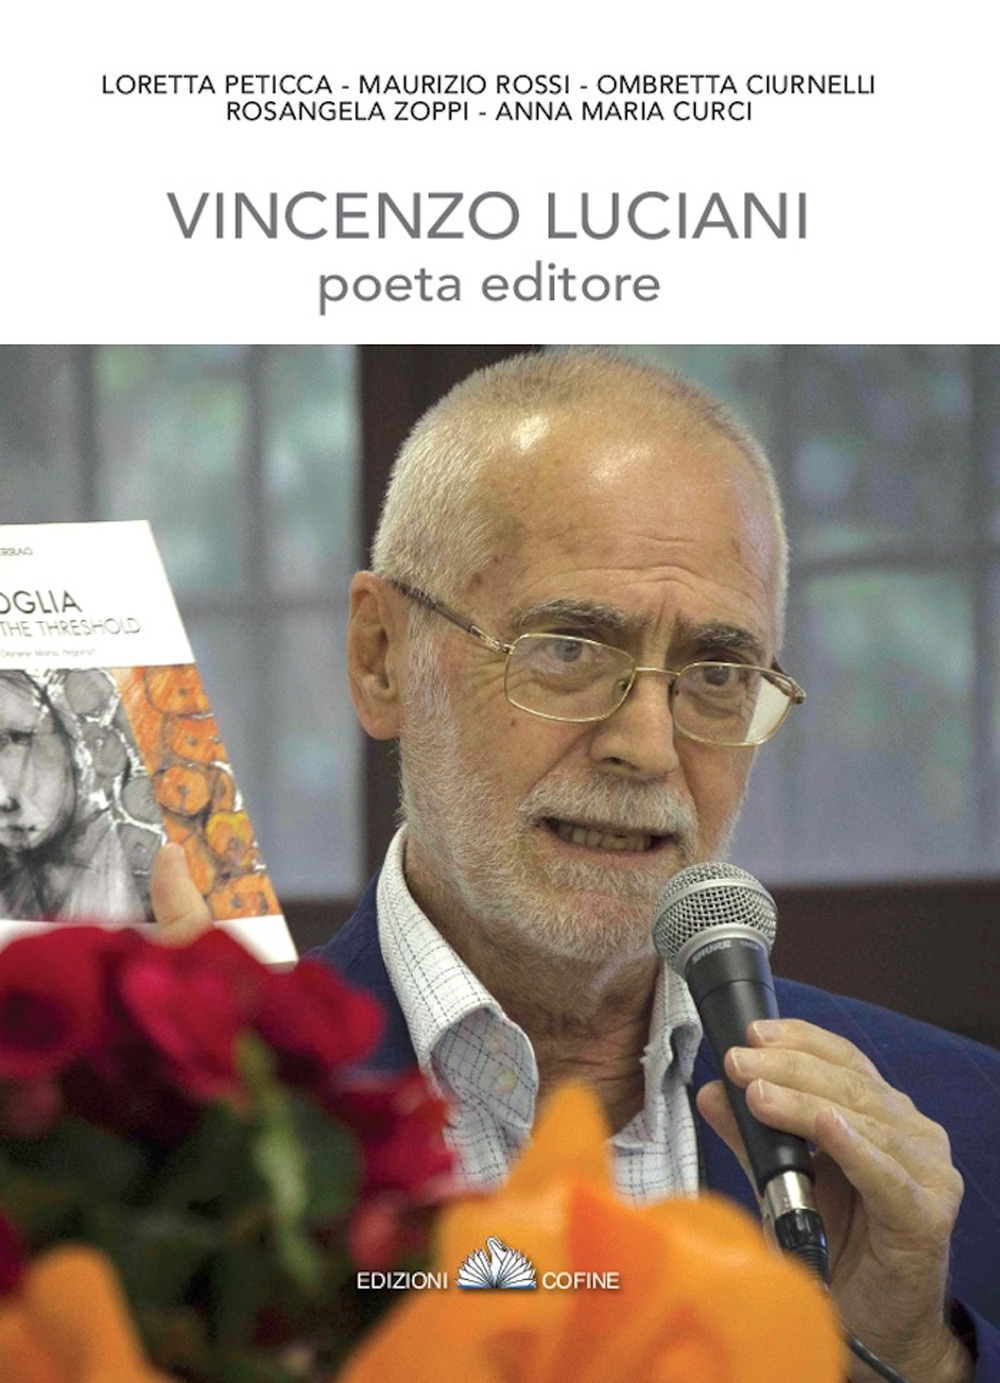 Vincenzo Luciani, poeta editore